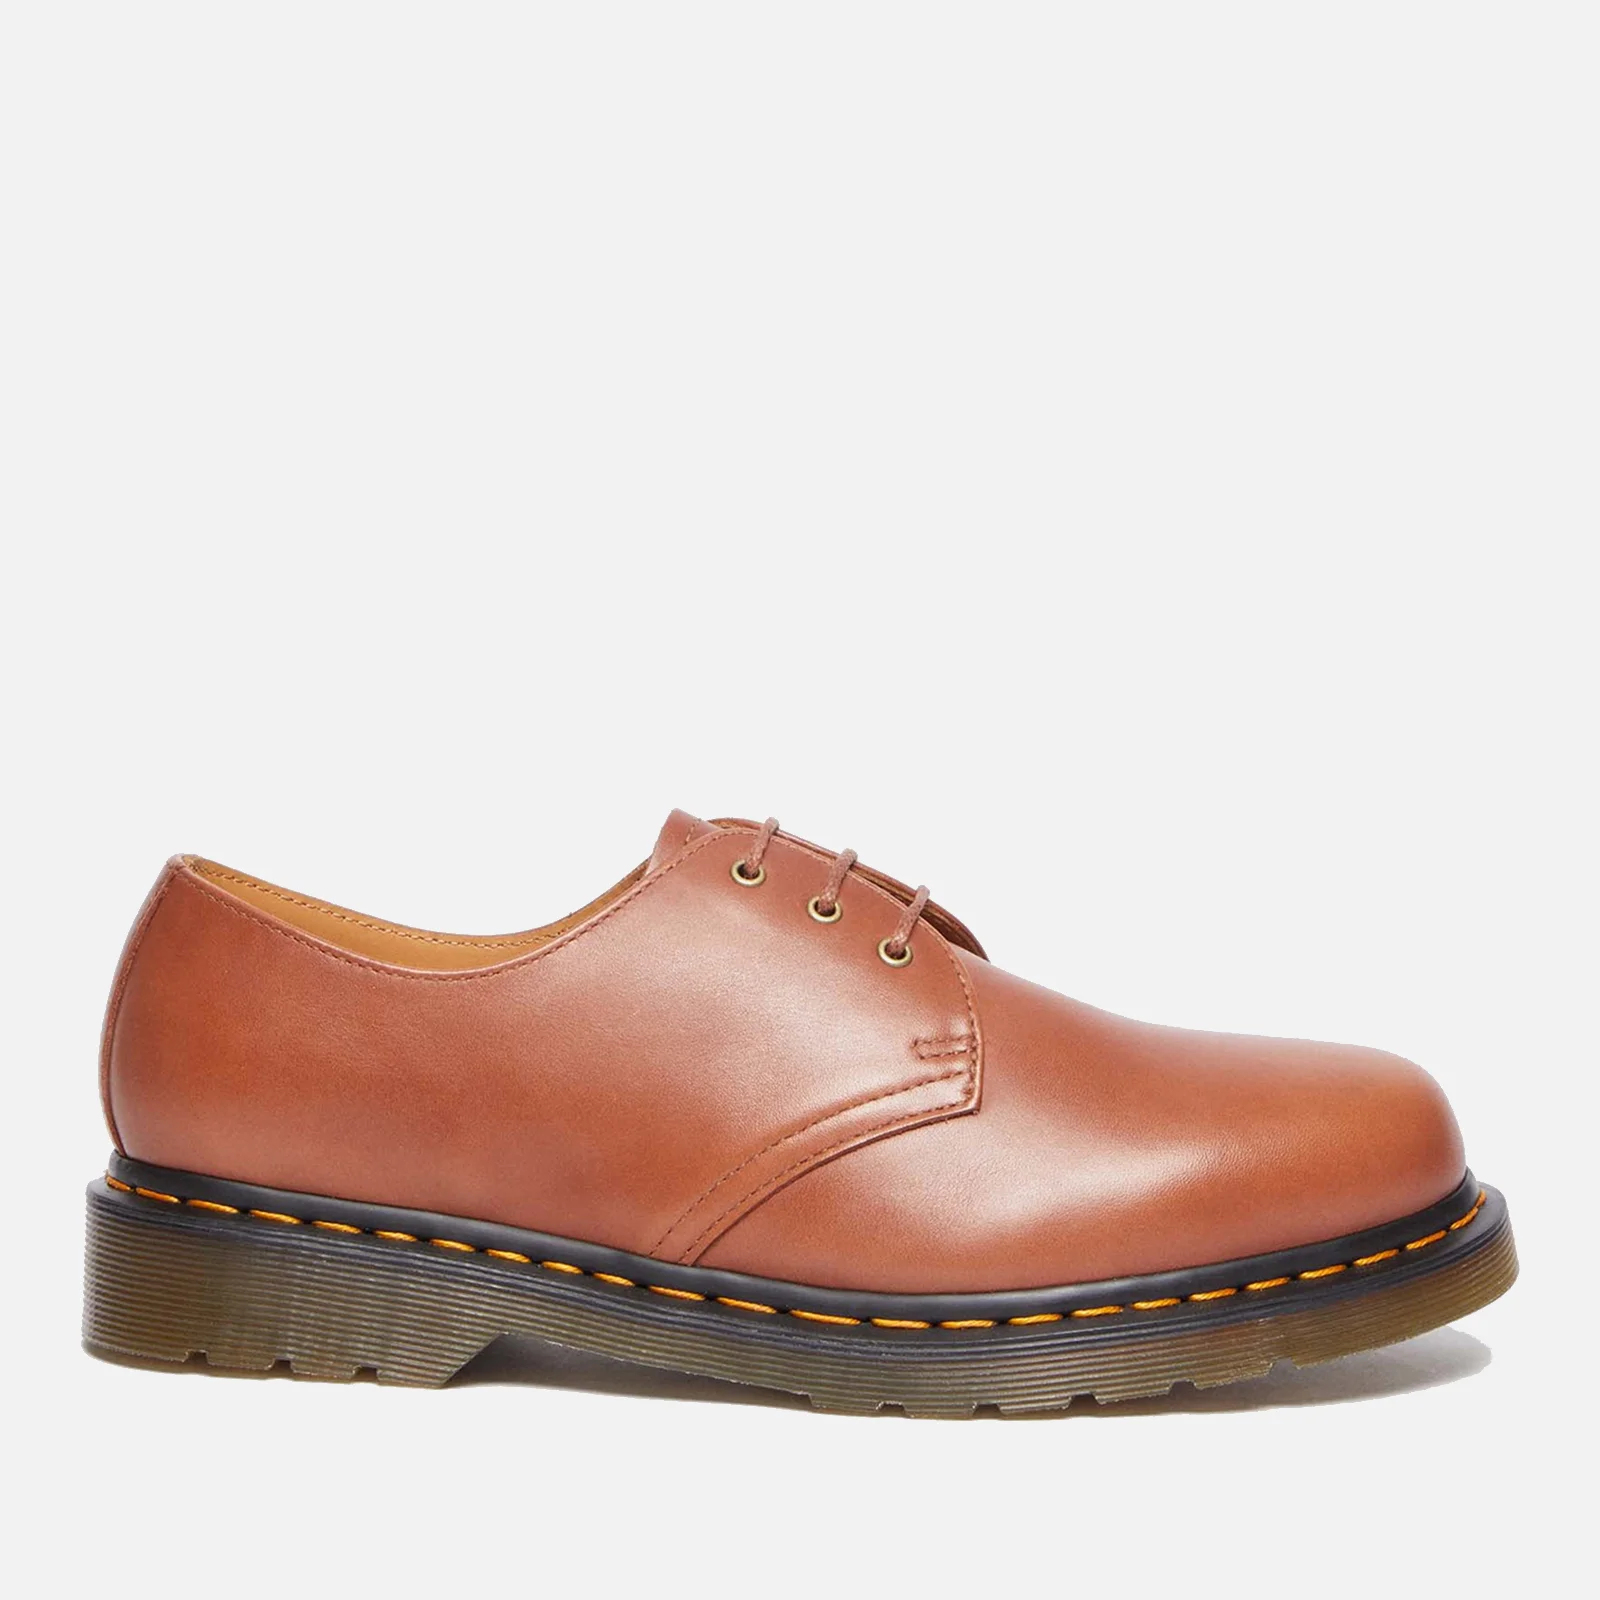 Dr. Martens Men's 1461 Leather Shoes - UK 7 Image 1